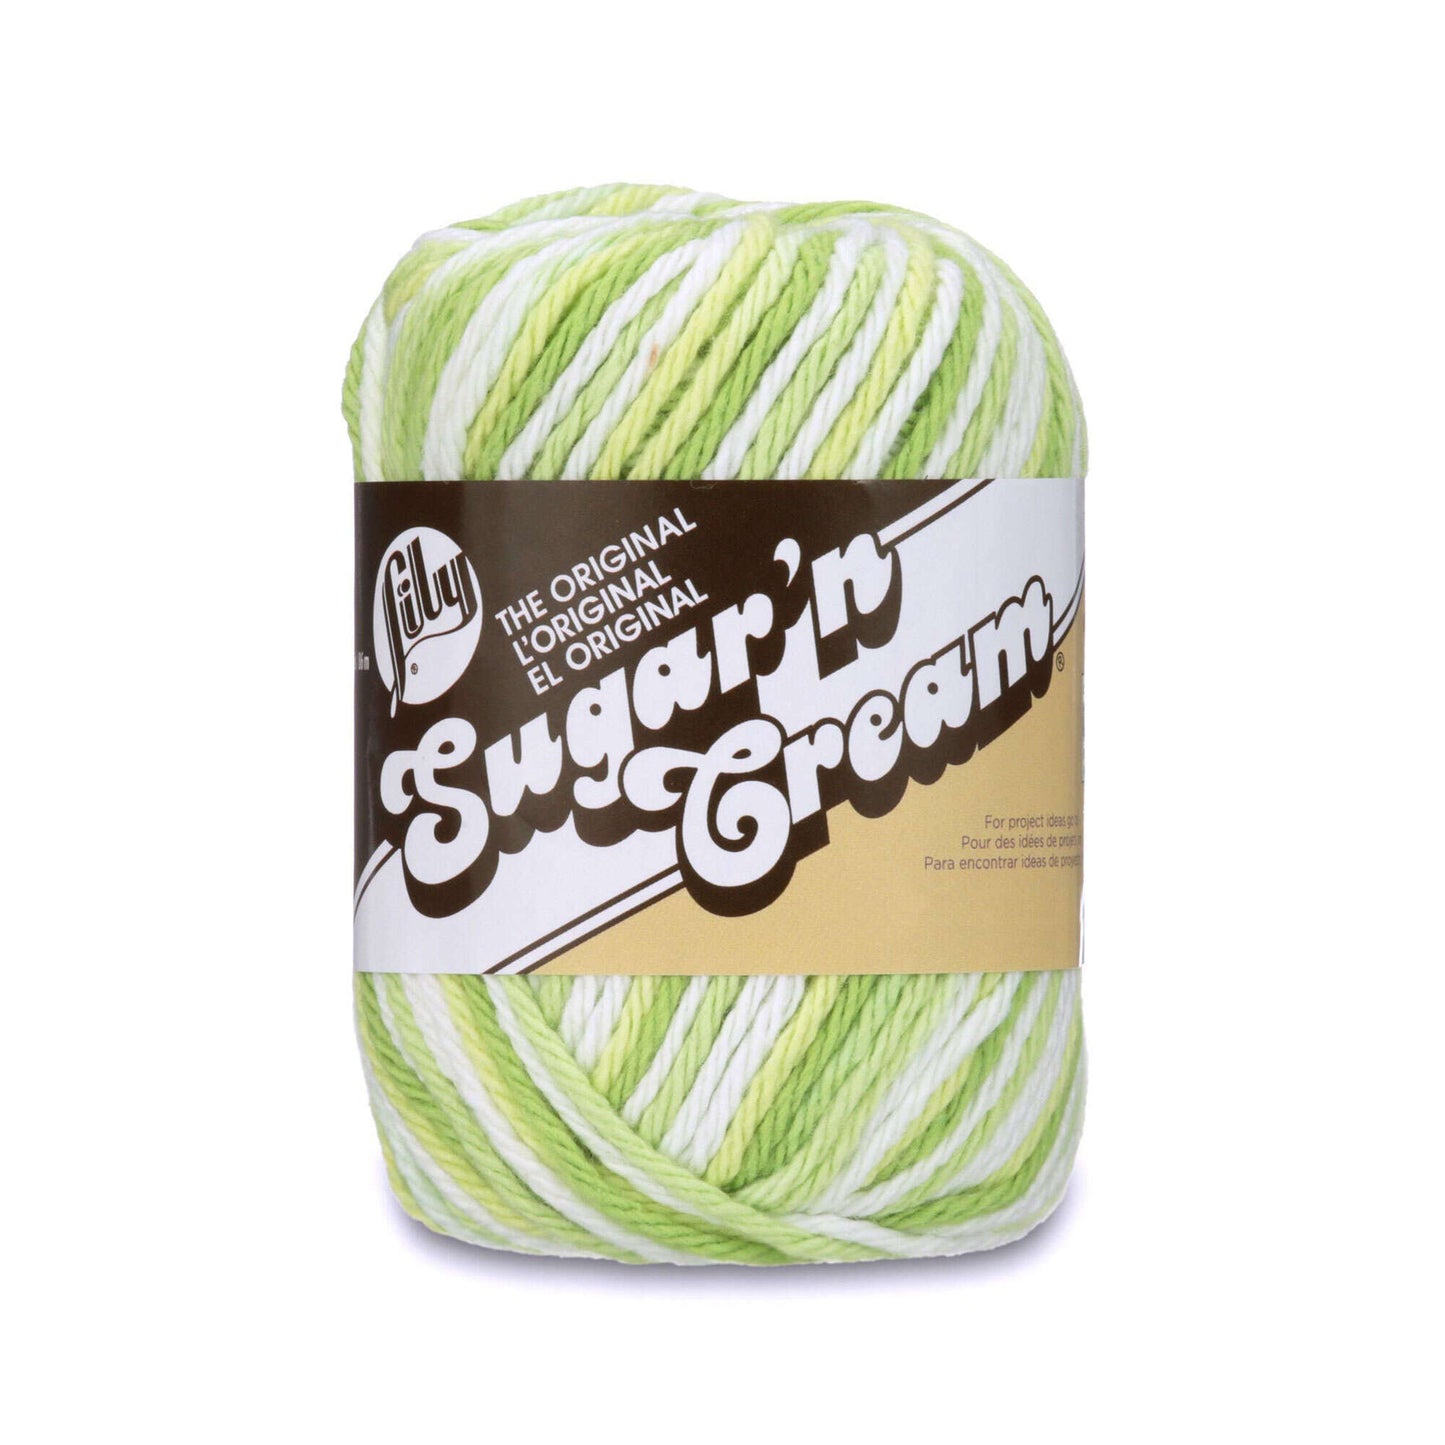 Lily Sugar 'n Cream Cotton Yarn Key Lime